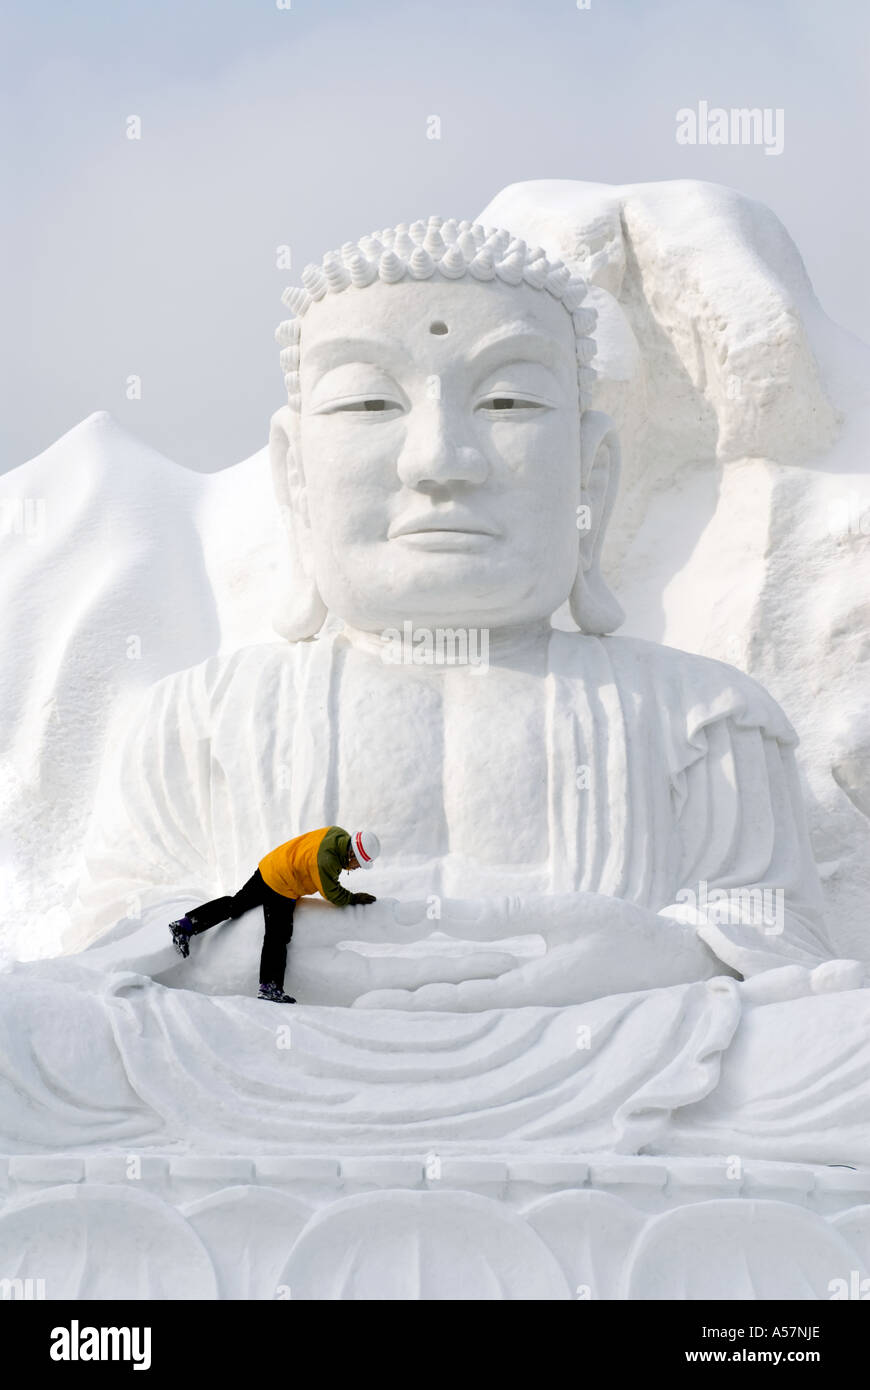 L'homme de la neige boudha sculpté dans la neige à Sapporo Snow Festival Japon 2006 Banque D'Images